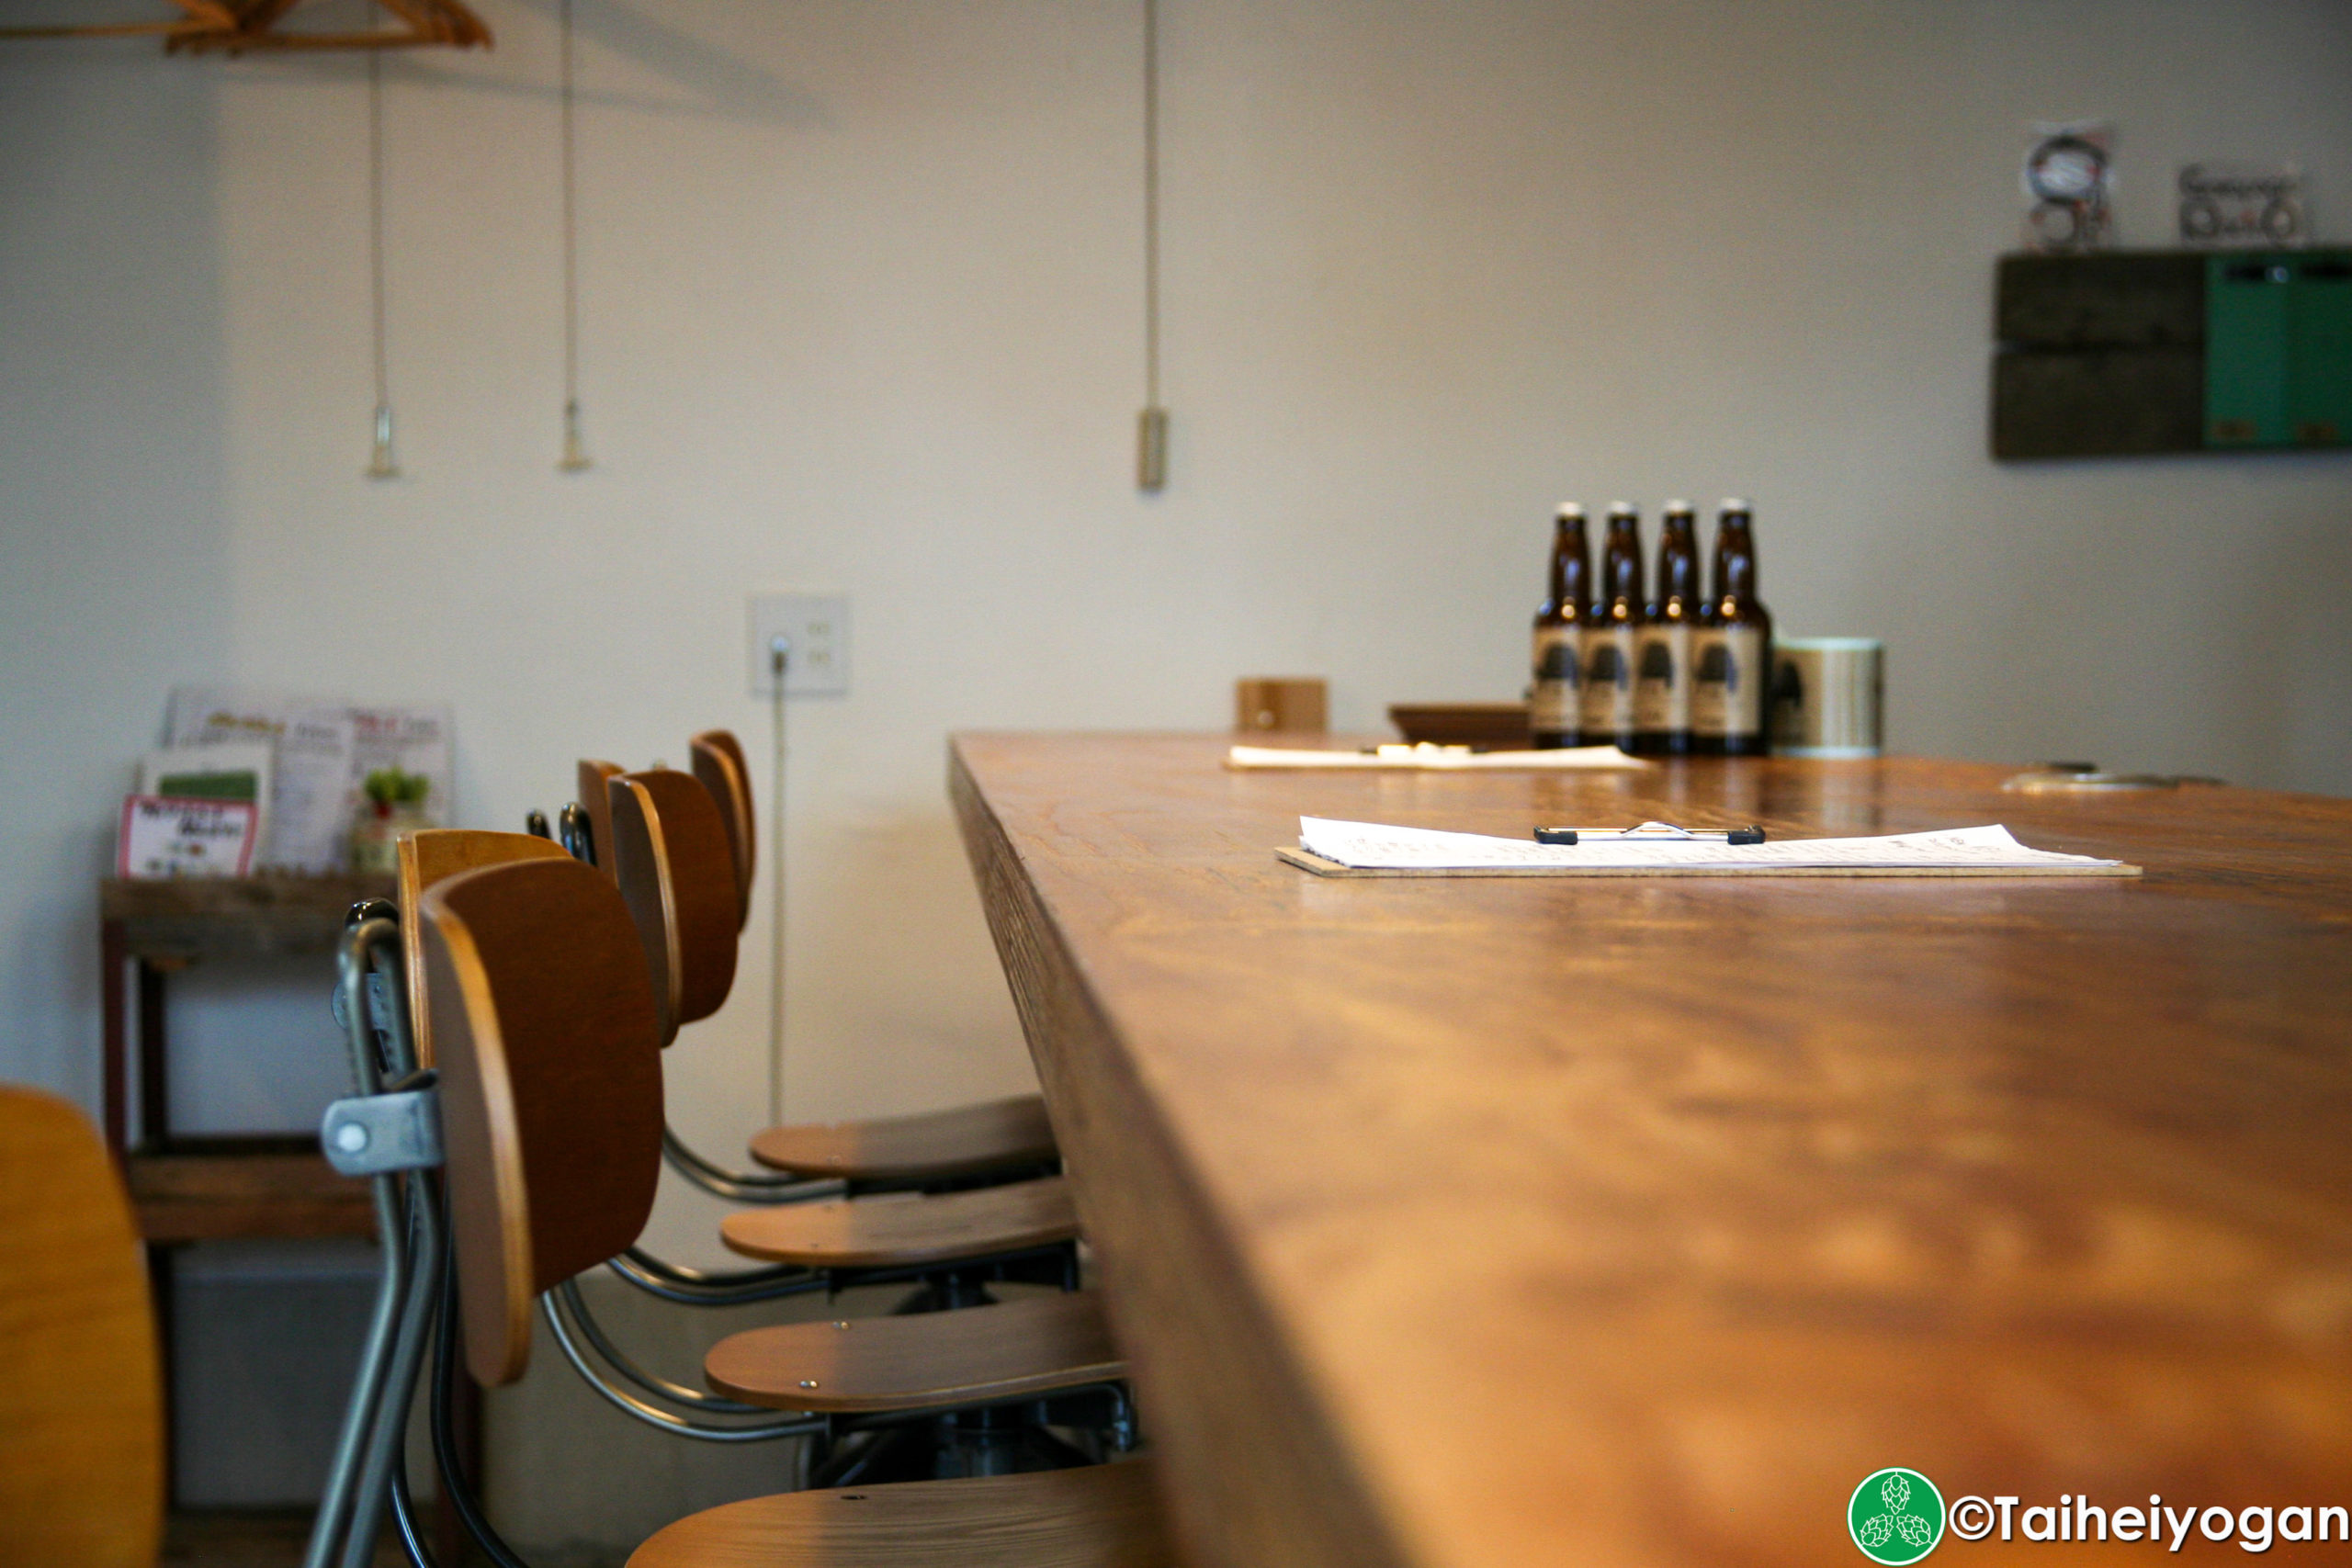 ガラパゴレーシング・Garapago Racing Kaisei Handmade Beer - Interior - 1F Bar Counter Seating